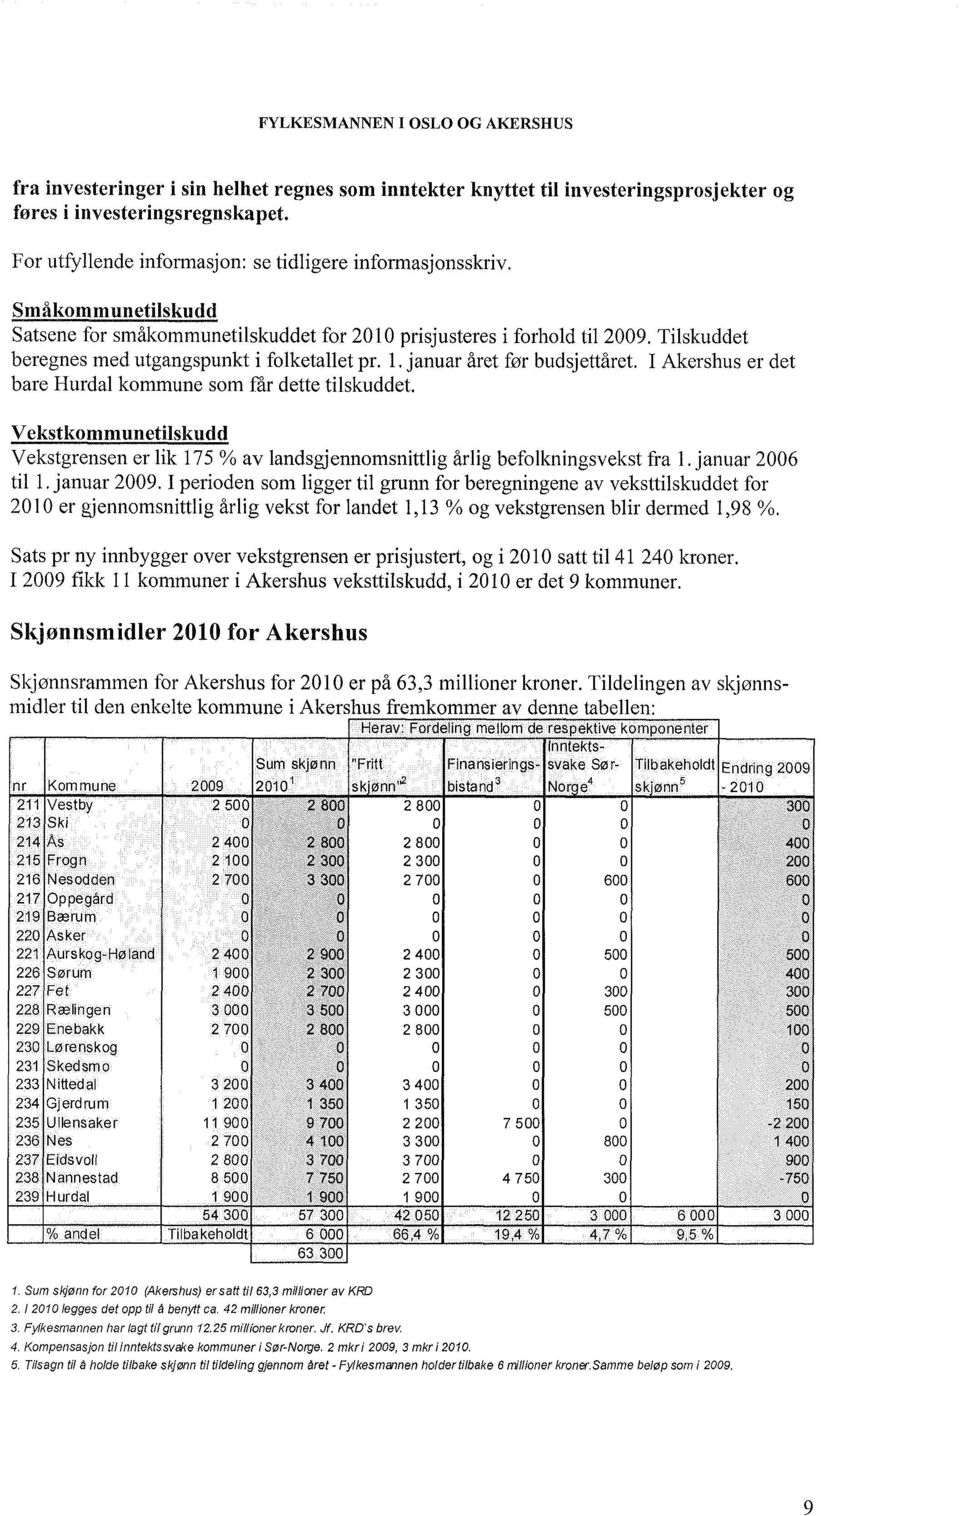 Tilskuddet beregnes med utgangspunkt i folketallet pr. l. januar året før budsjettåret. I Akershus er det bare Hurdal kommune som f"ar dette tilskuddet.